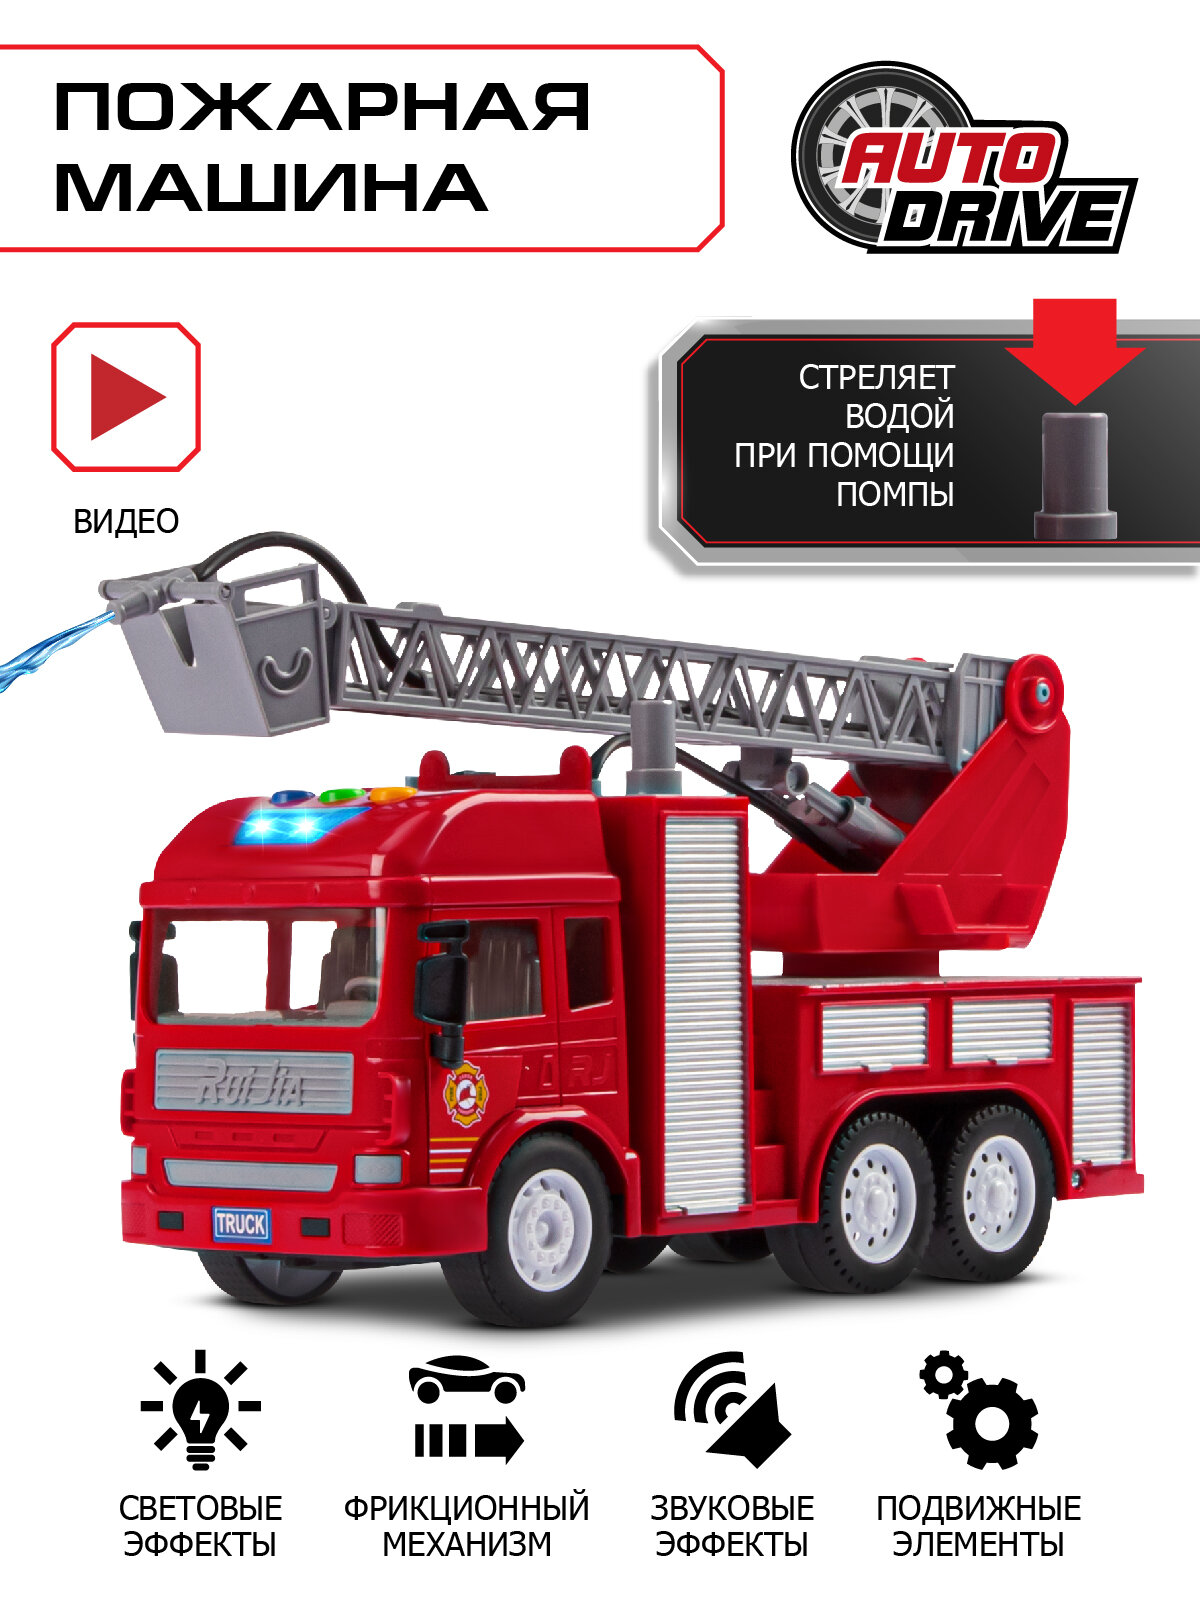 Машинка детская фрикционная, Пожарная ТМ AUTODRIVE, стреляет водой, свет, звук, красный, JB0404793